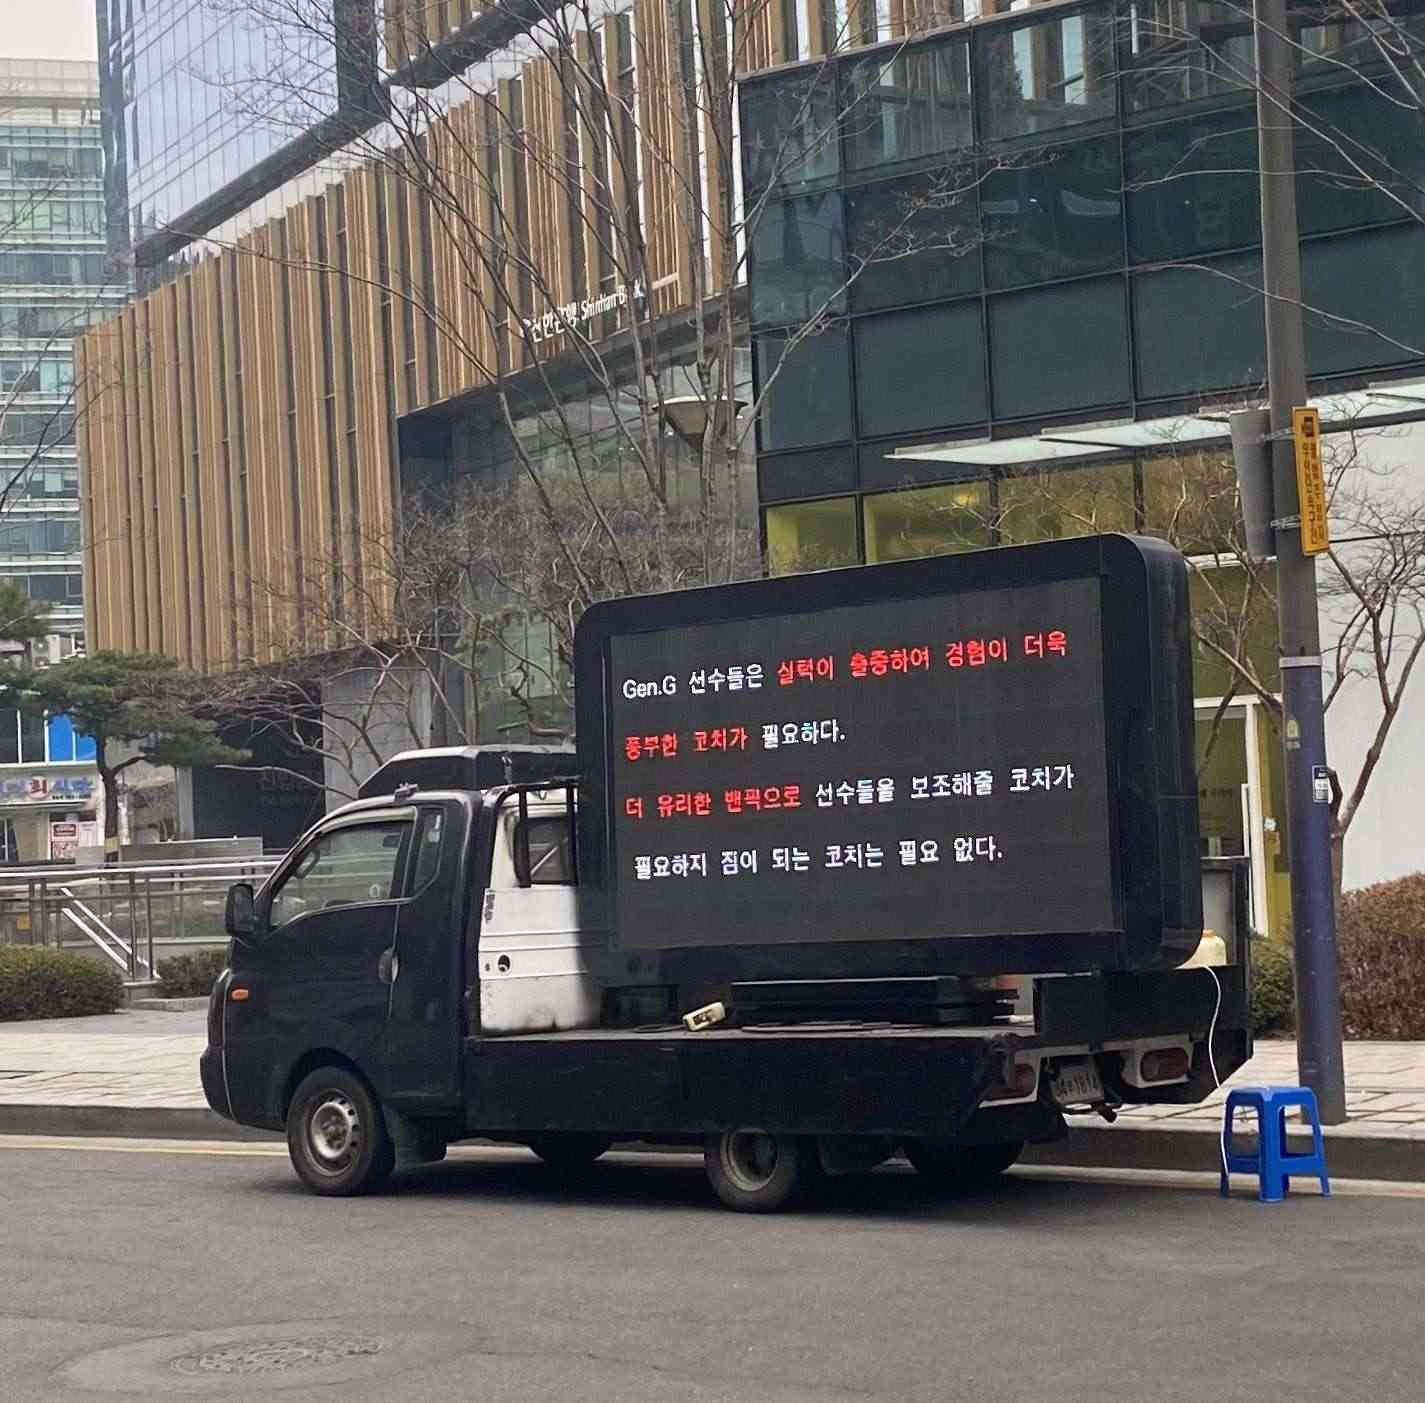 Xe tải với biển điện tử được gửi đến đỗ trước nhà thi đấu LoL Park bởi fan GEN.